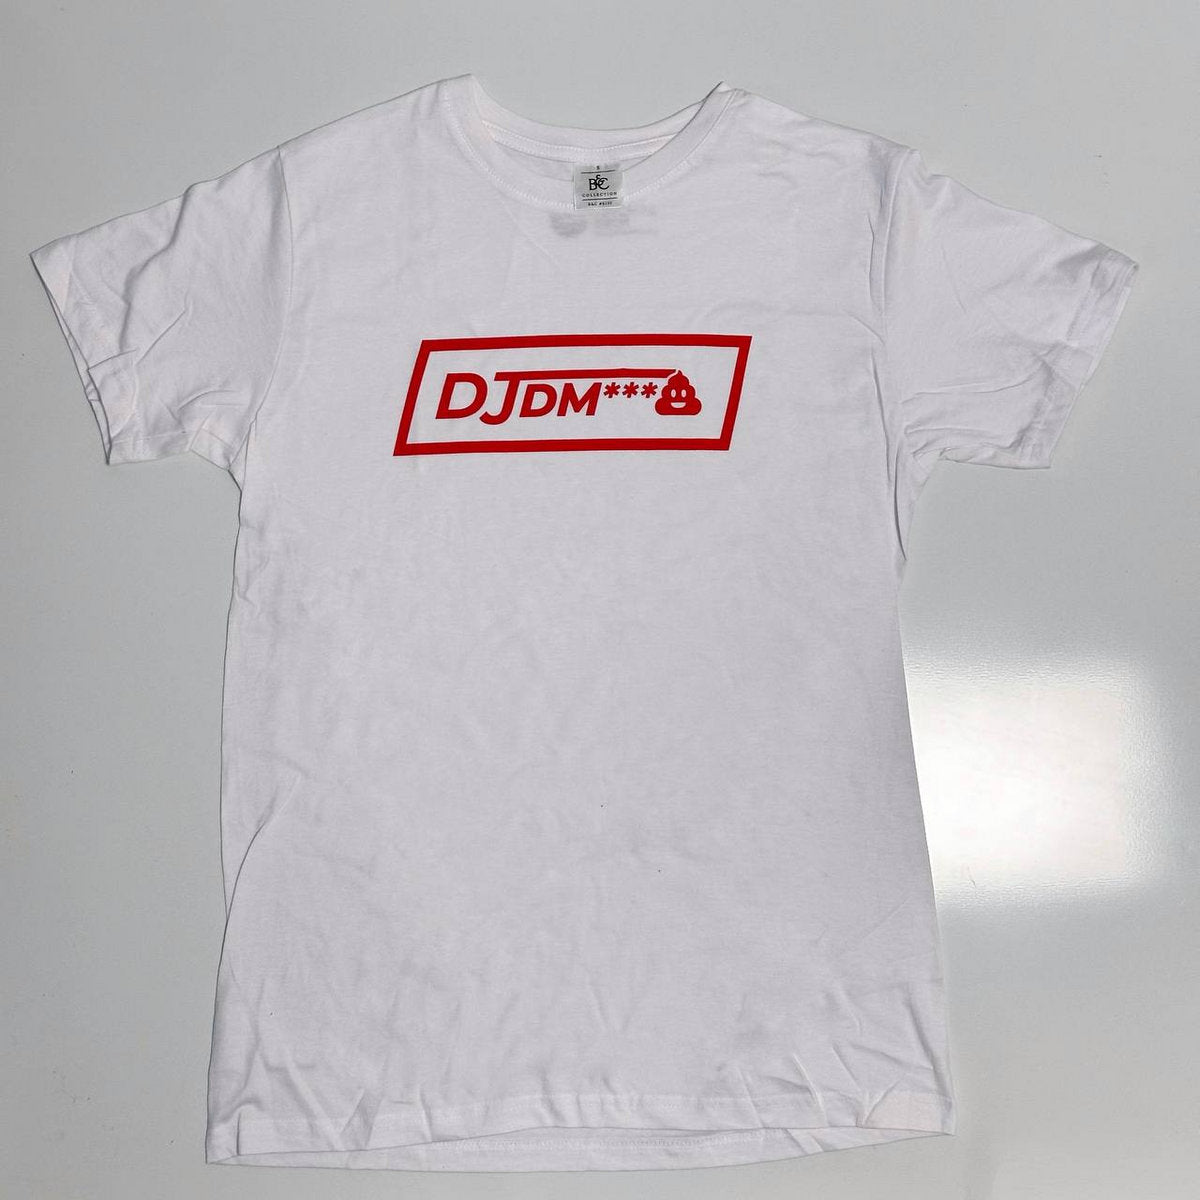 DJ D M**** - Lo Stato Sociale [T-Shirt]